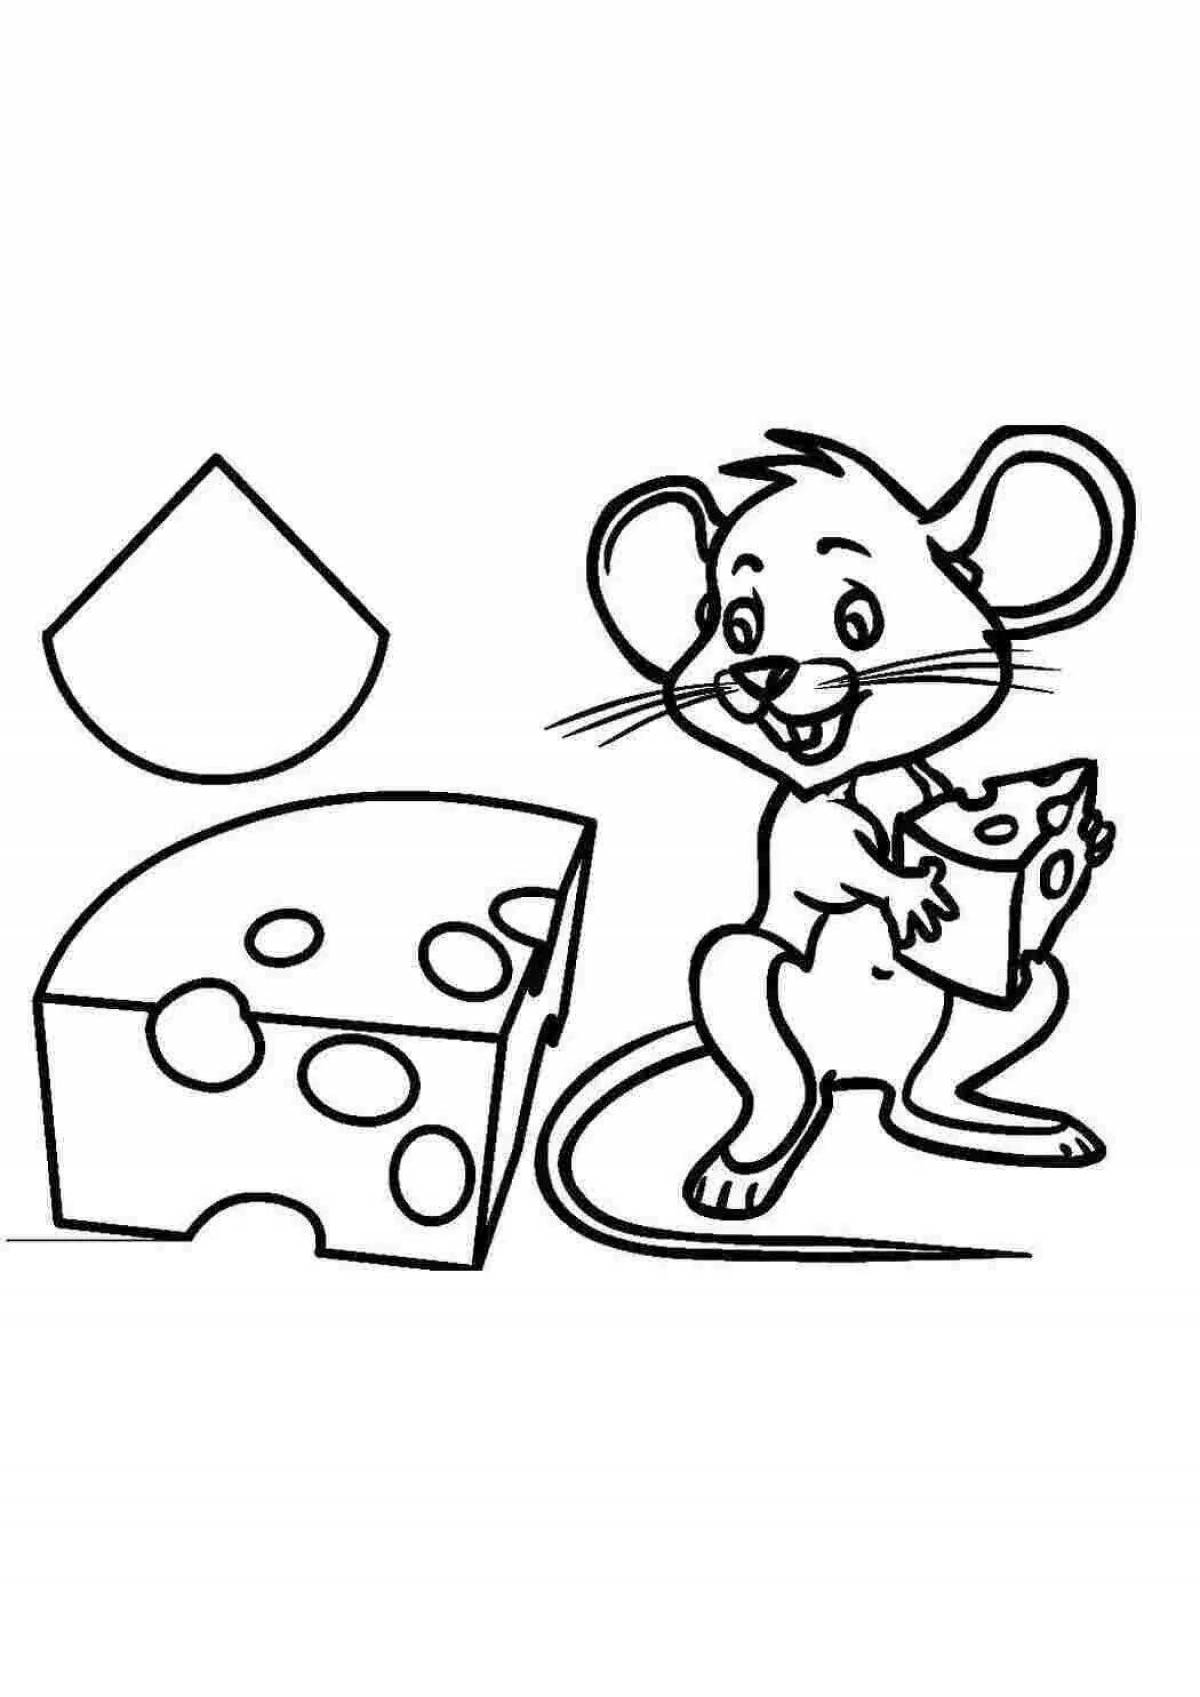 Красочная раскраска мышь для детей 4-5 лет